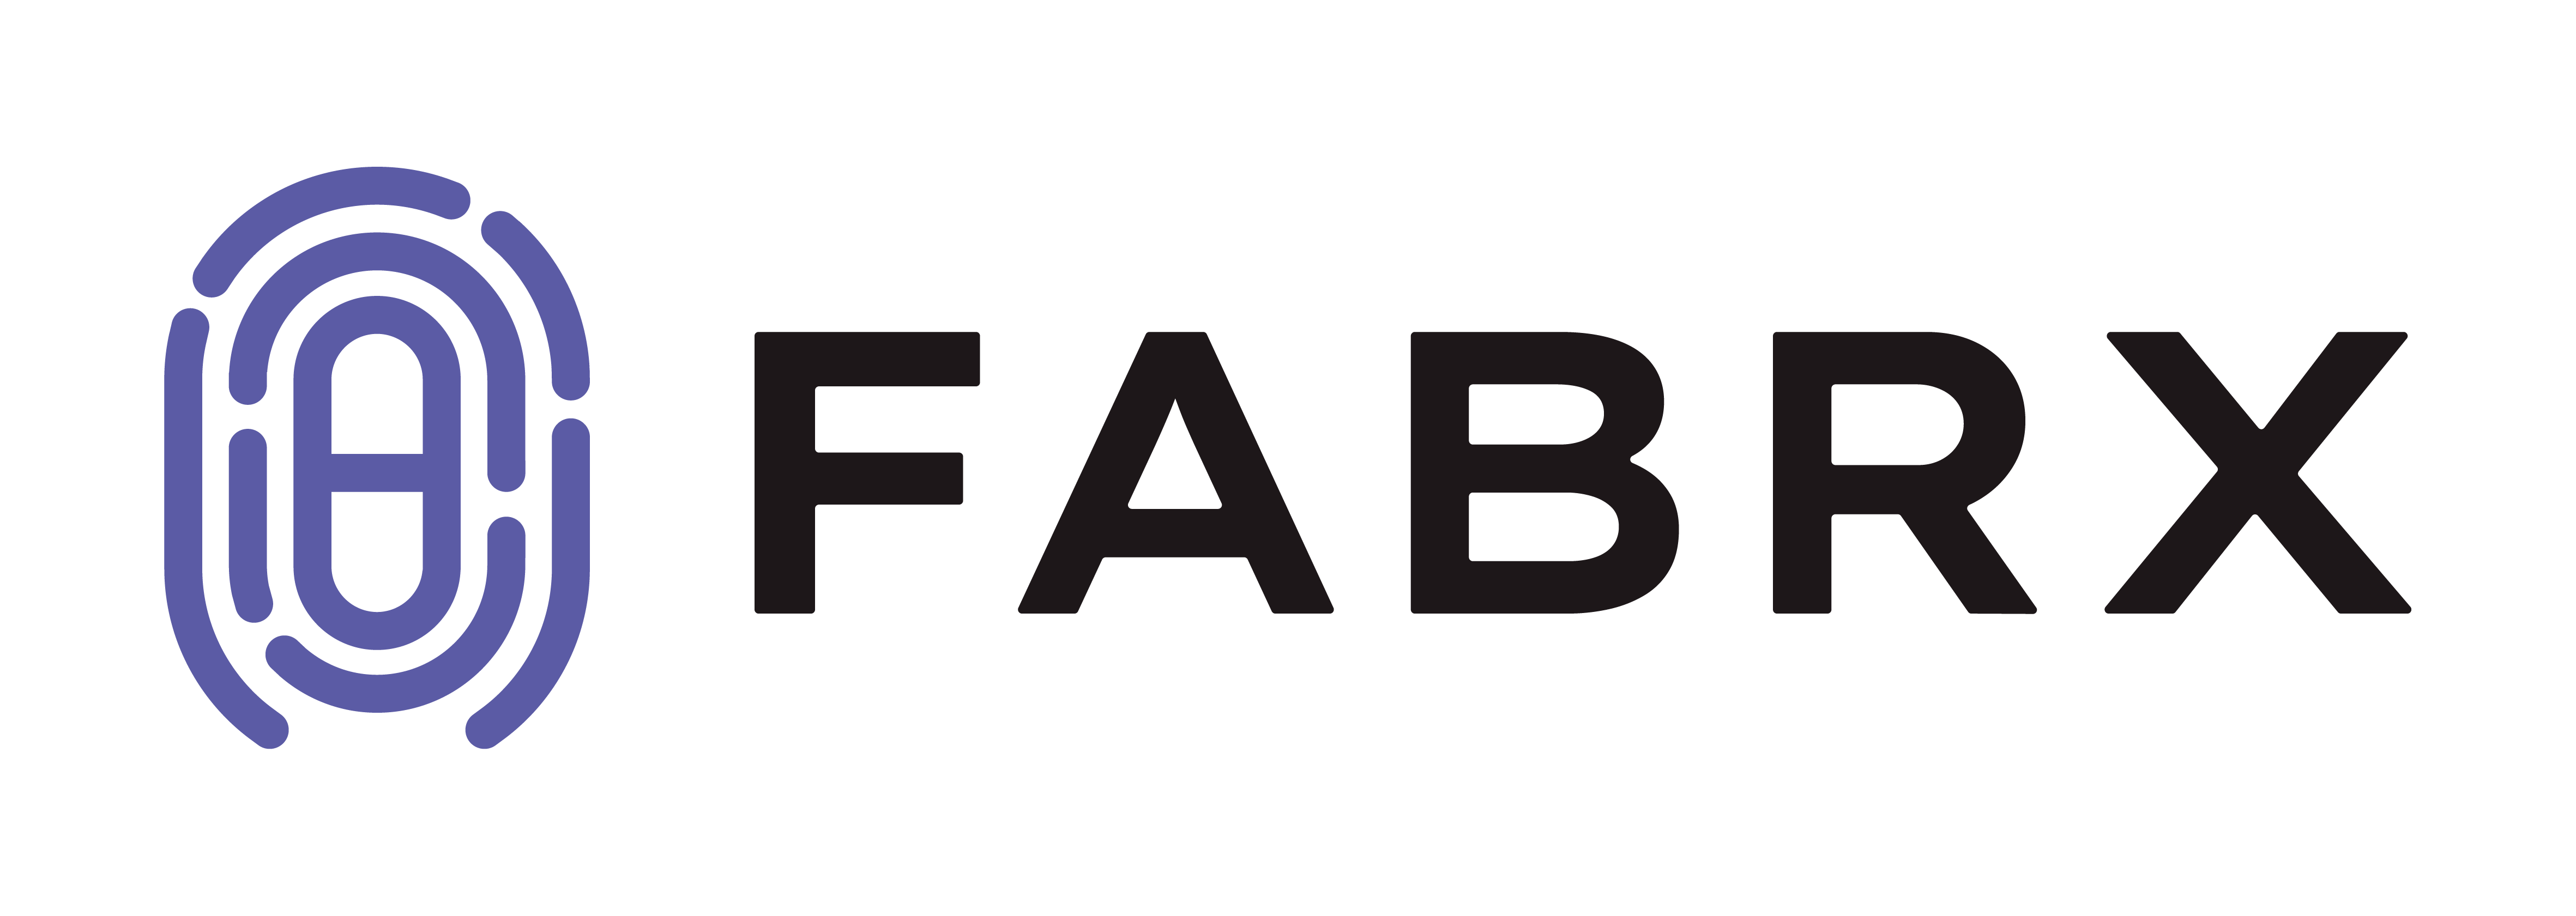 Fabrx logo